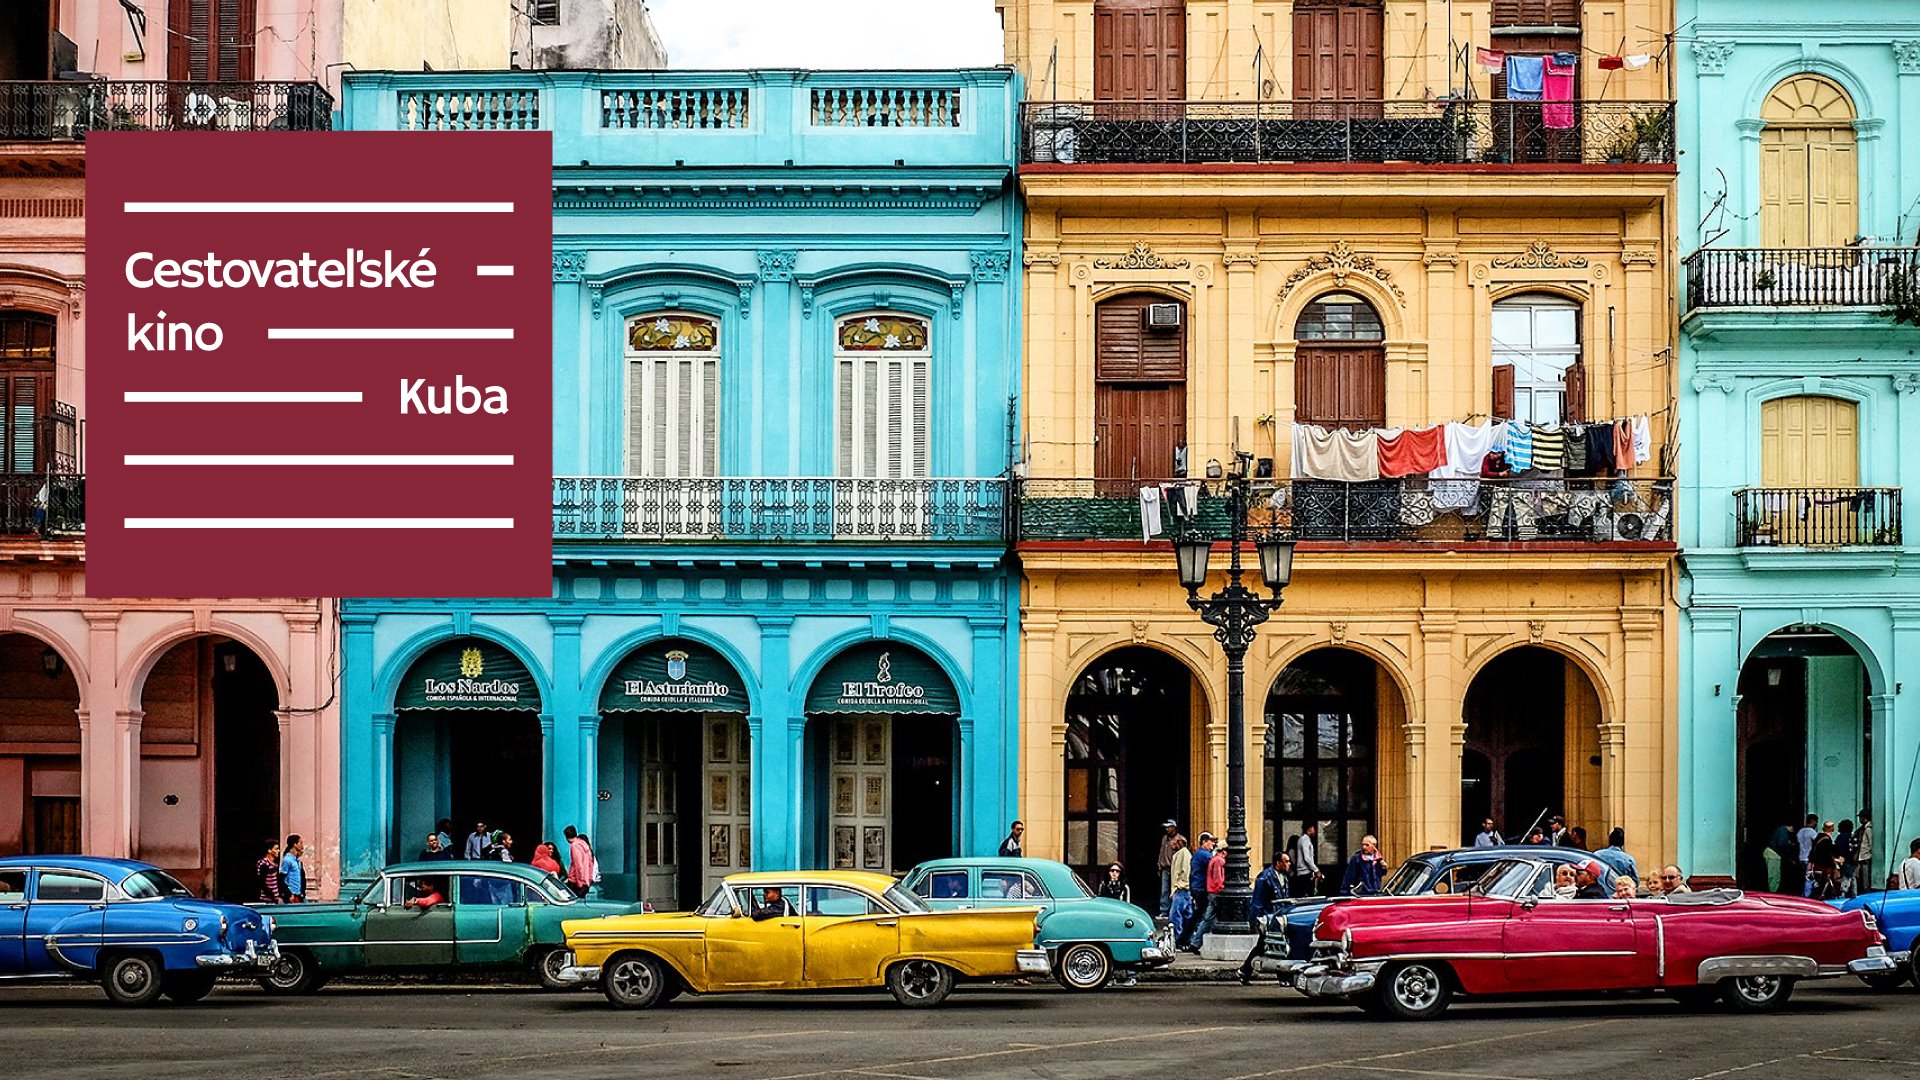 Cestovateľské kino: Kuba | Kino Hviezda